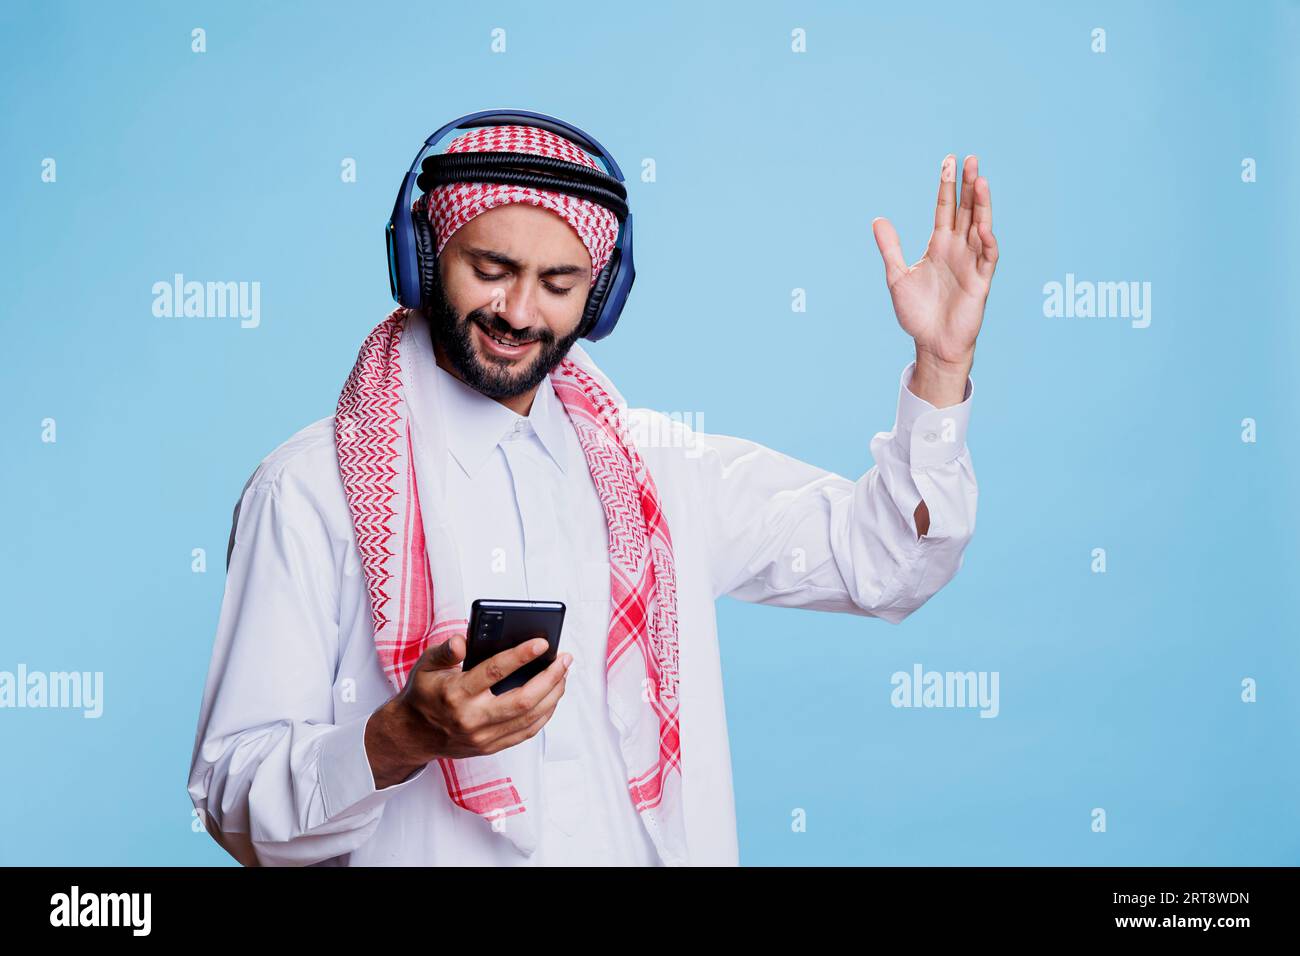 Uomo musulmano che indossa un velo ghutra e cuffie wireless che cambia canzone nella playlist sullo smartphone. Arabo ascolto di musica in cuffia, gesticolazione e utilizzo del telefono cellulare Foto Stock